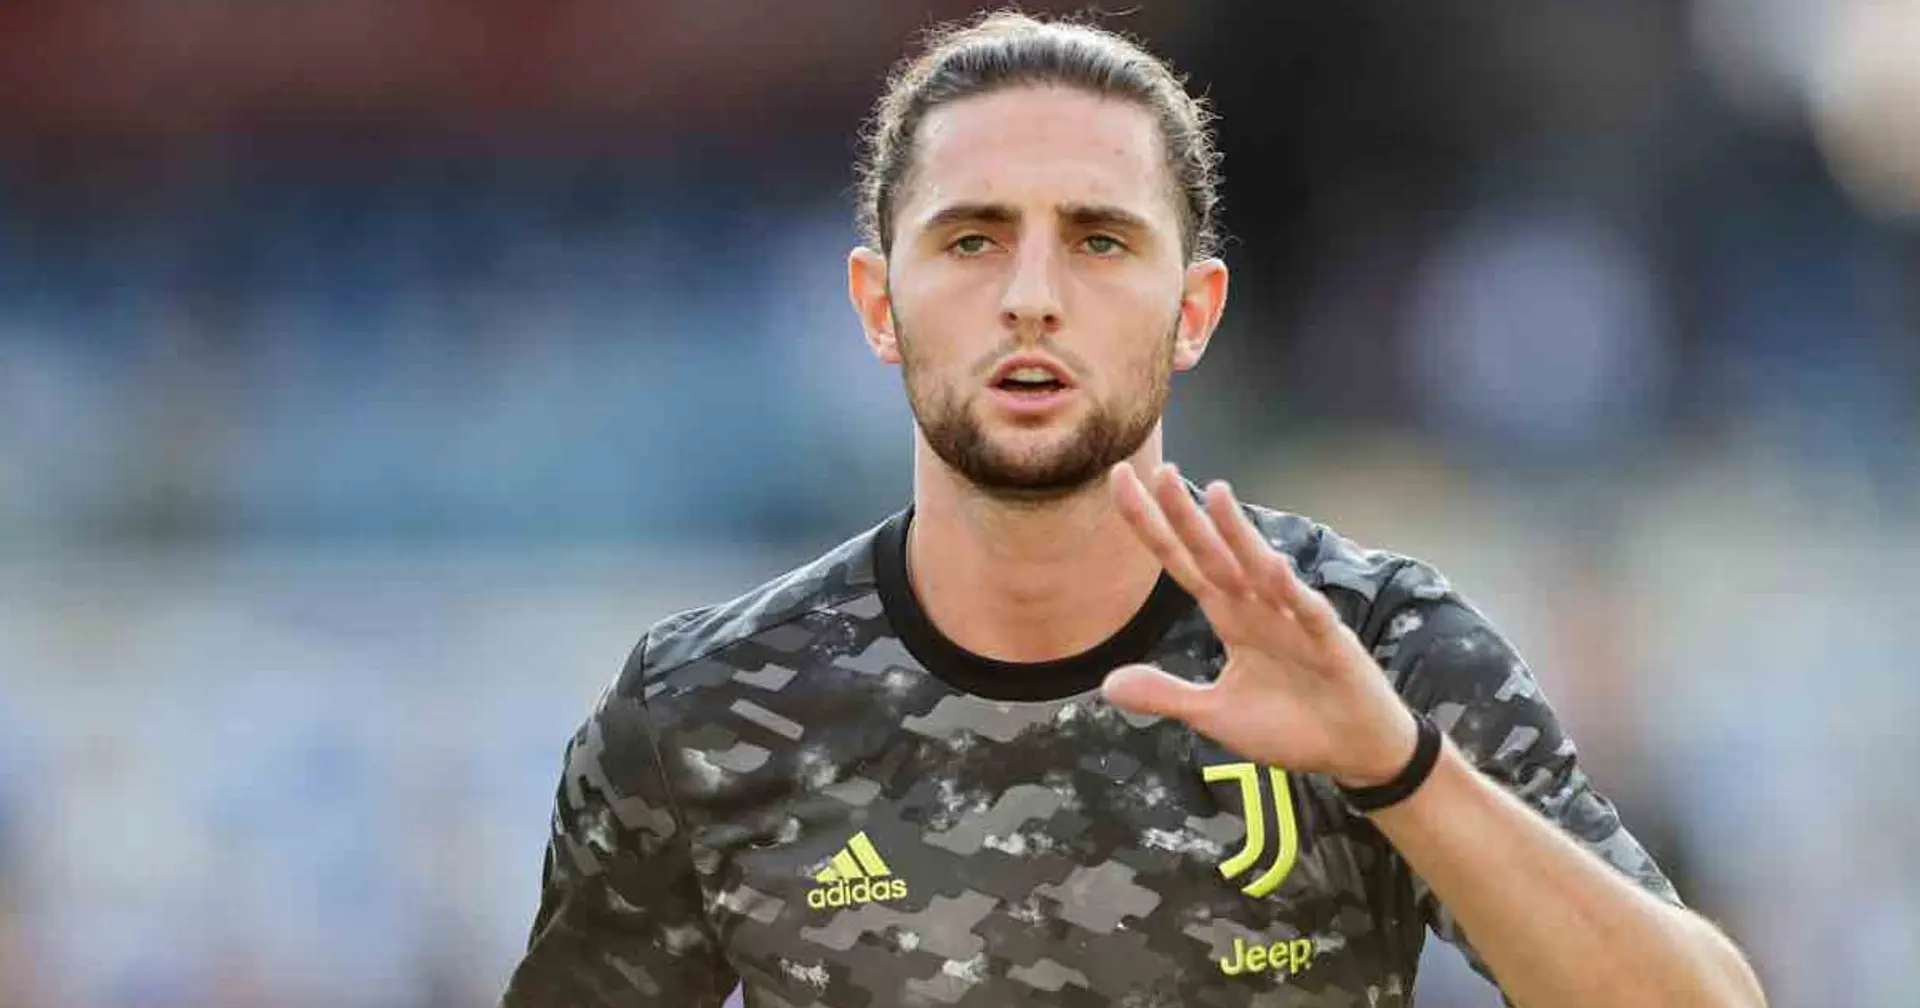 Buone notizie dall'infermeria per la Juventus: Allegri ritrova Adrien Rabiot